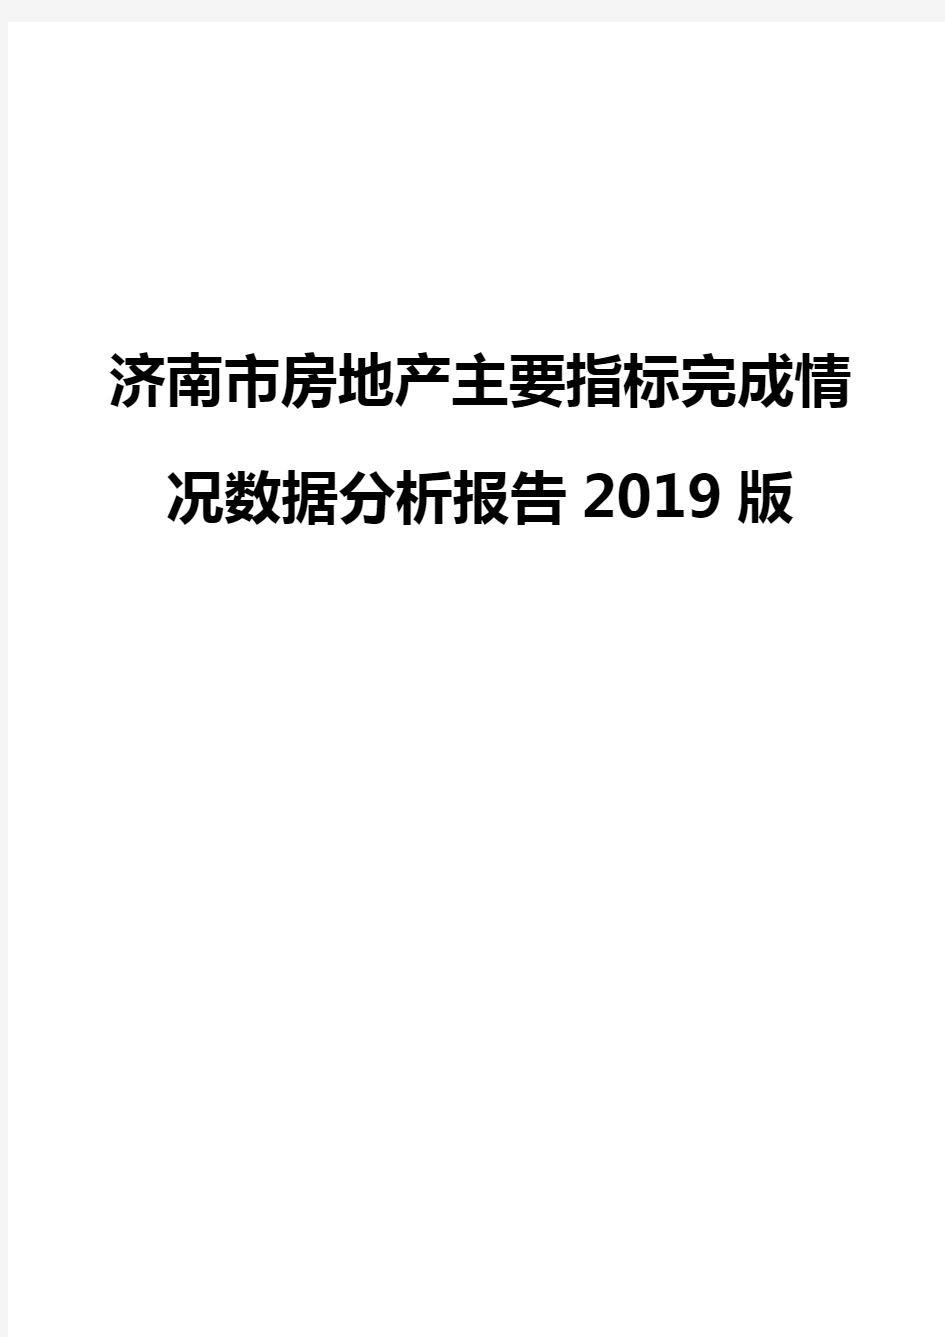 济南市房地产主要指标完成情况数据分析报告2019版